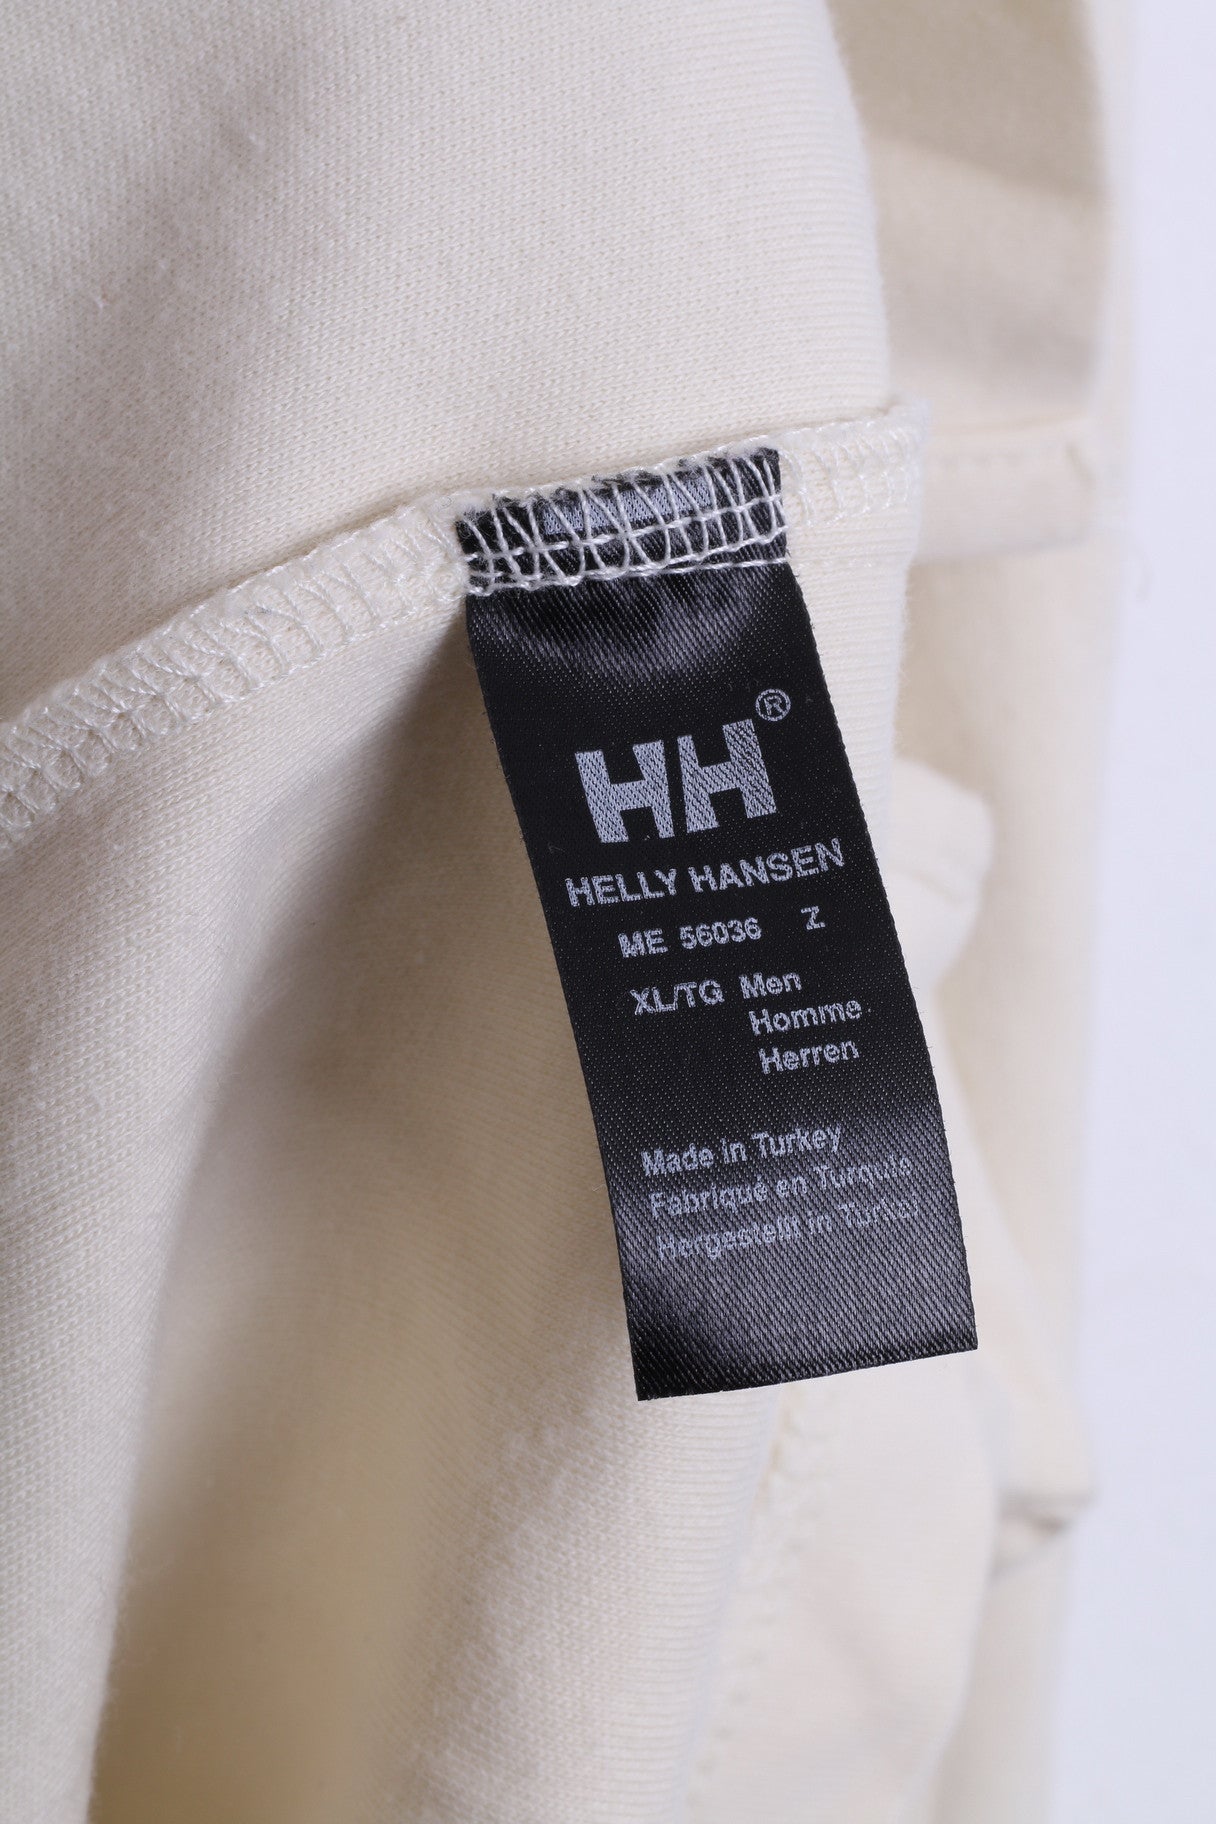 Helly Hansen Mens XL Jumper Sweatshirt Beige Cotton Crew Neck